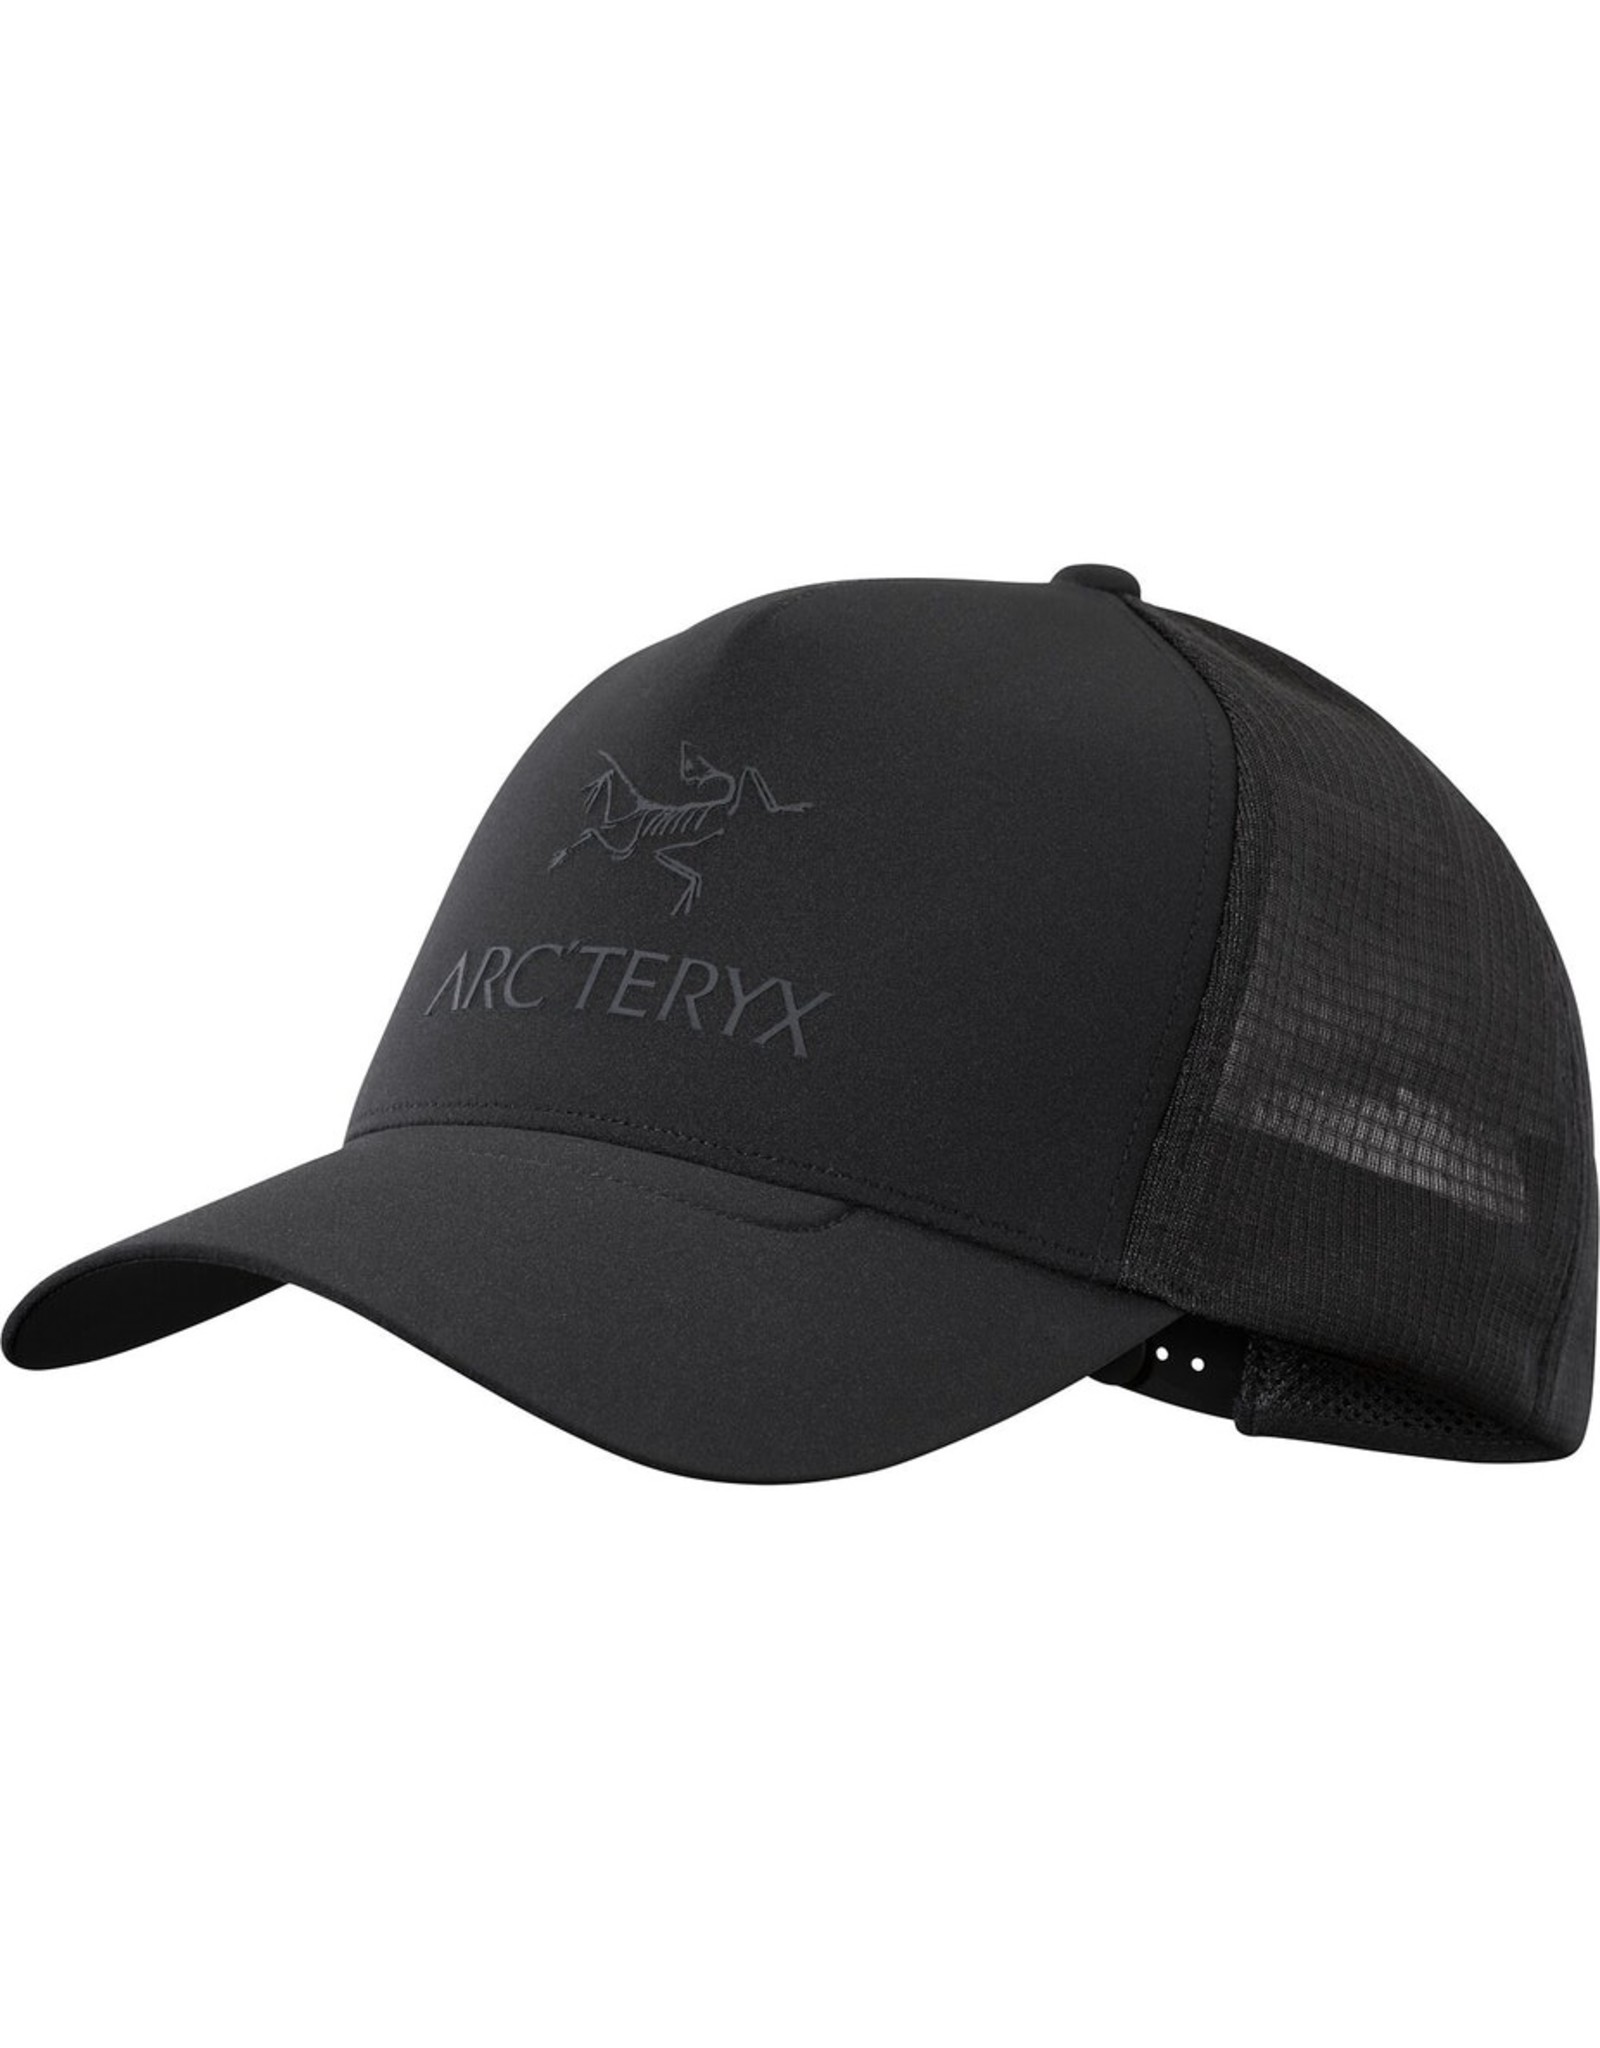 Arc'teryx Arc'teryx Logo Trucker Flat Black